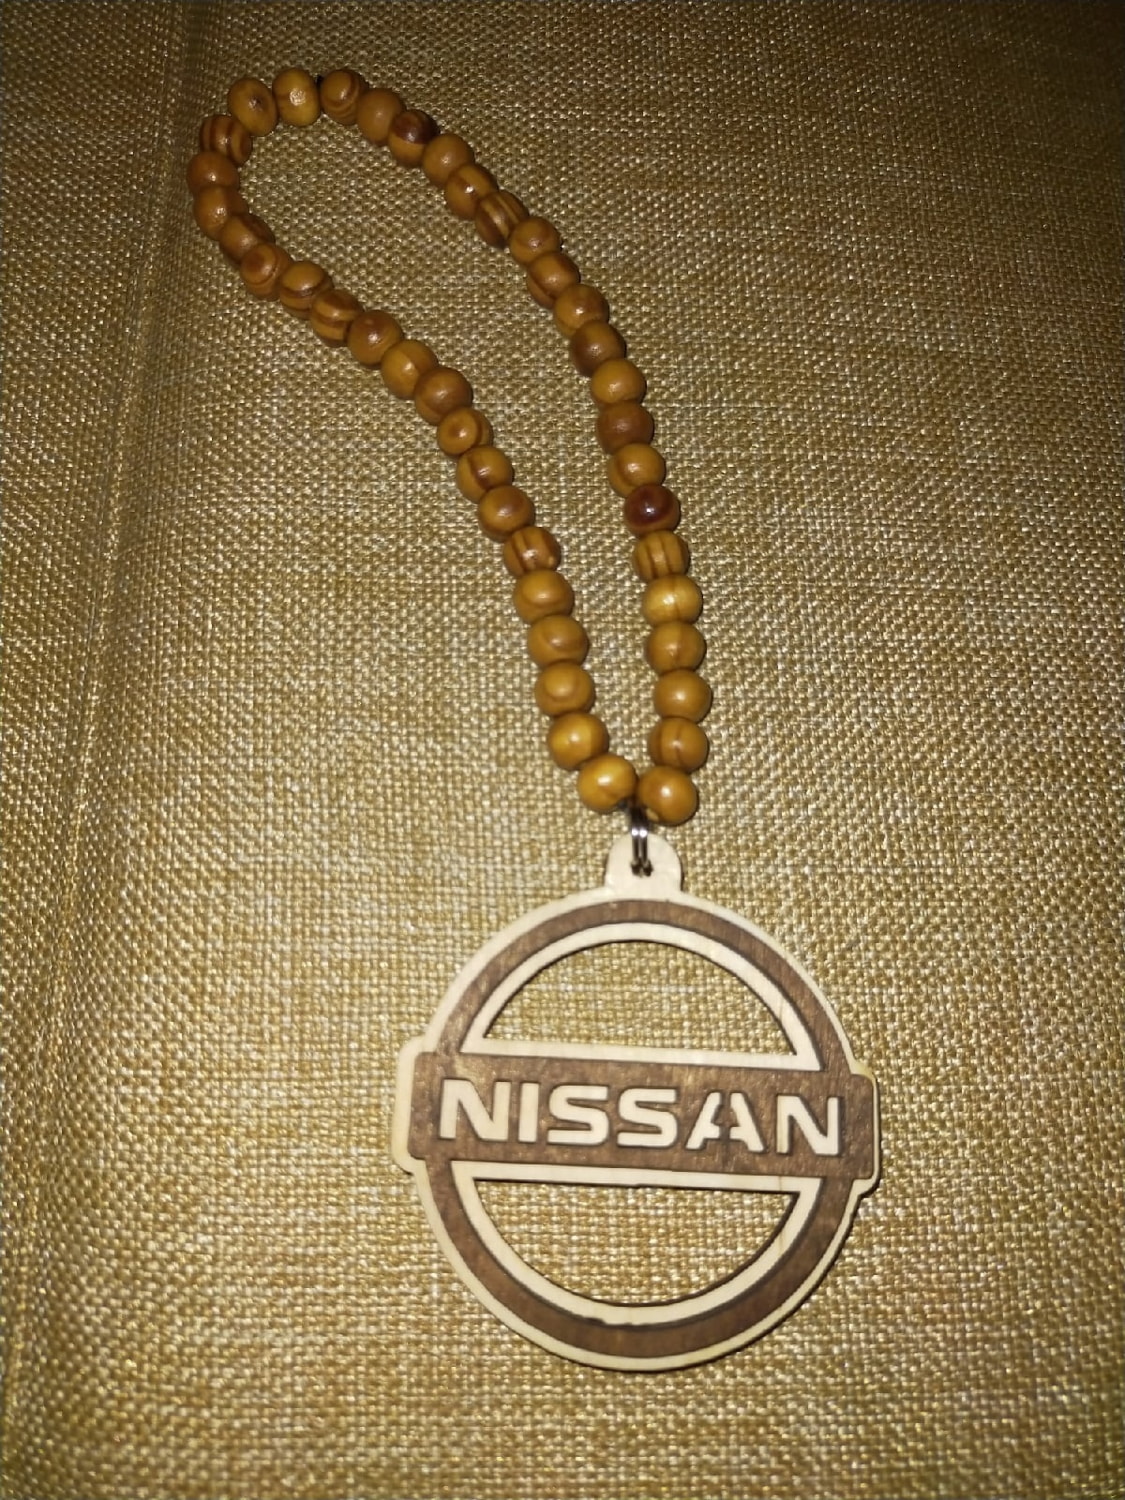 Lasergeschnittener Nissan-Schlüsselanhänger Nissan-Logo-Schlüsselanhänger aus Holz